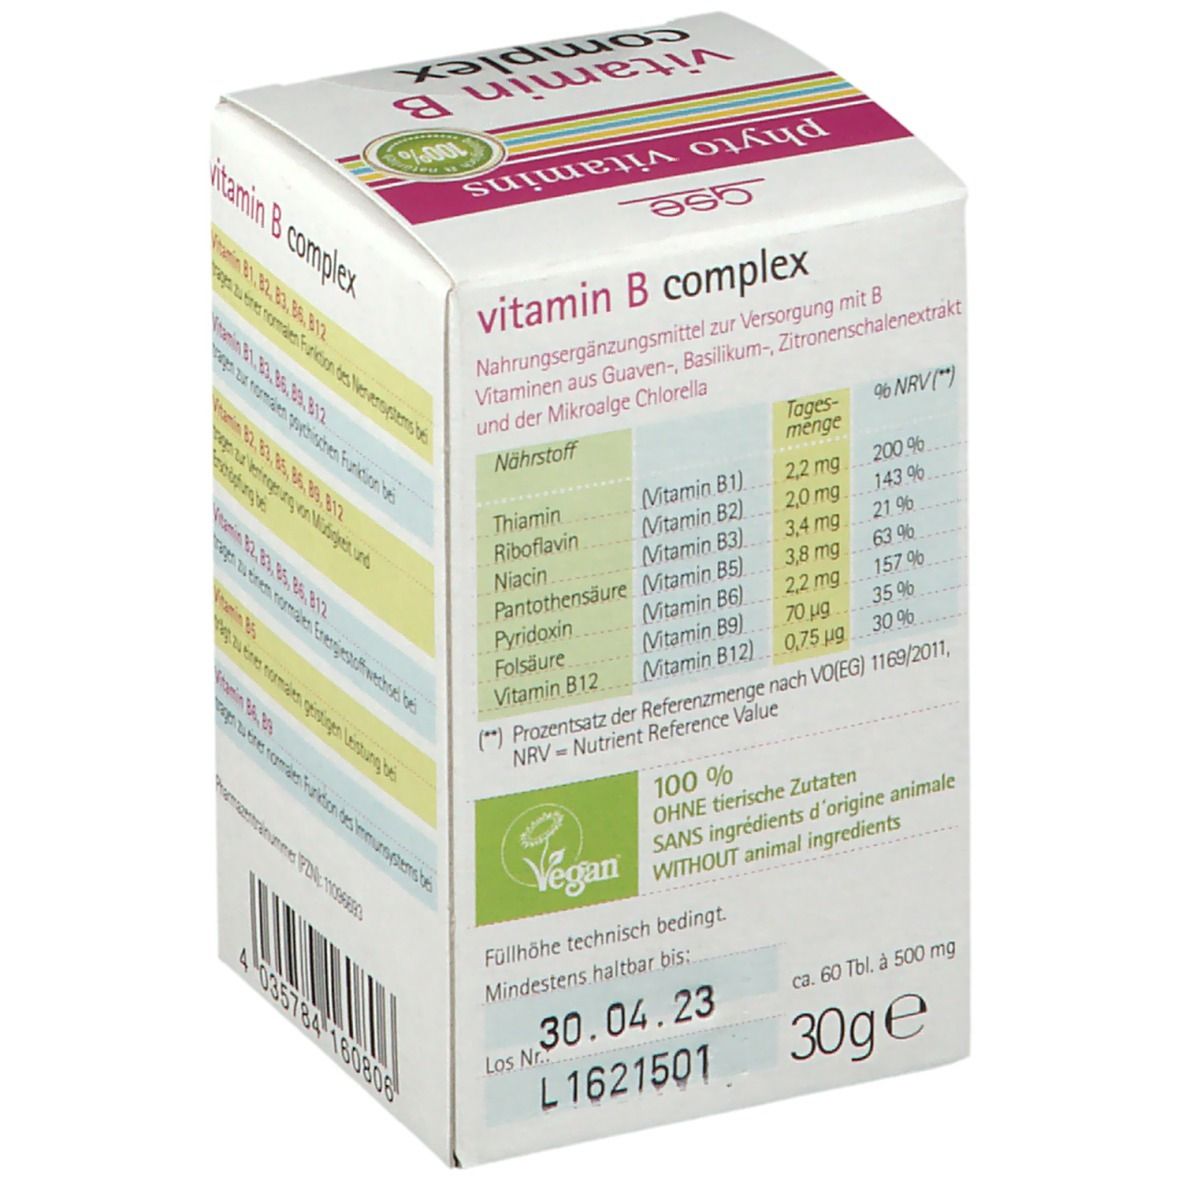 vitamin B complex